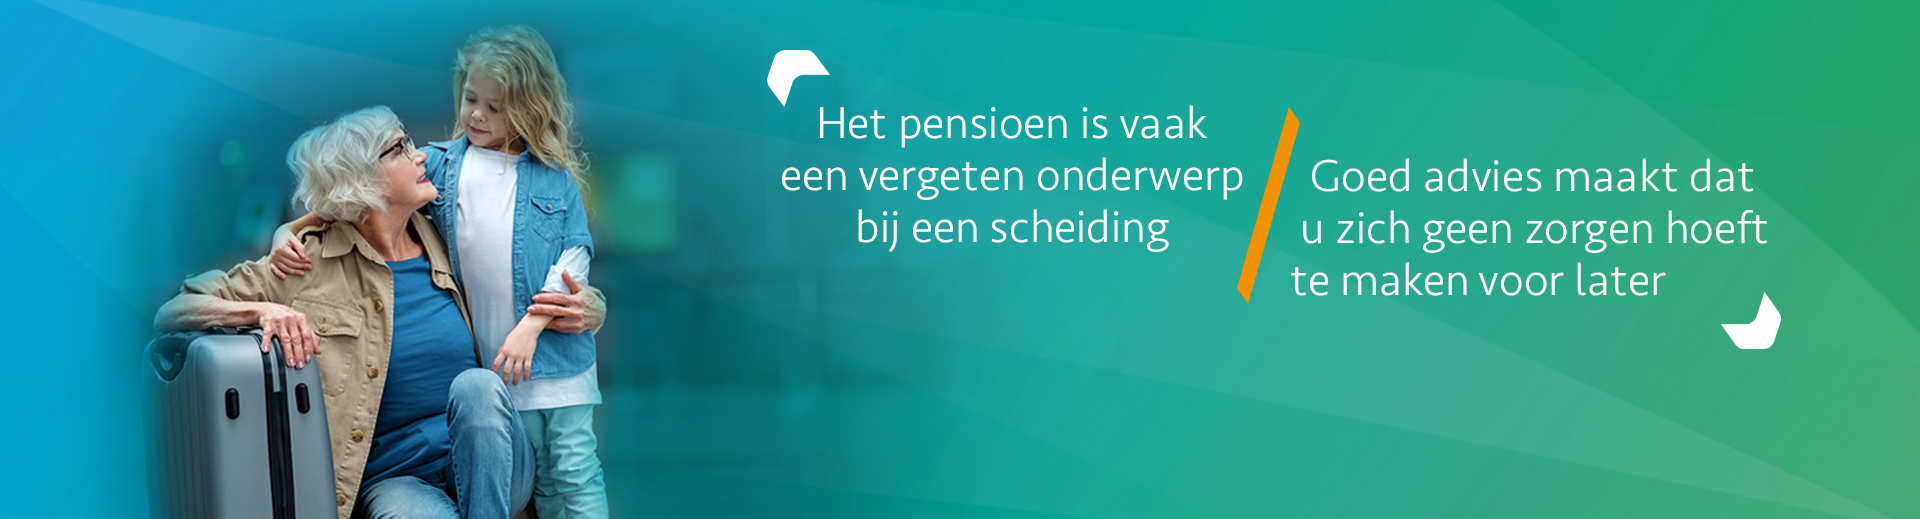 Pensioen regelen bij scheiding - Scheidingsplanner Hoofddorp - Badhoevedorp - Nieuw Vennep